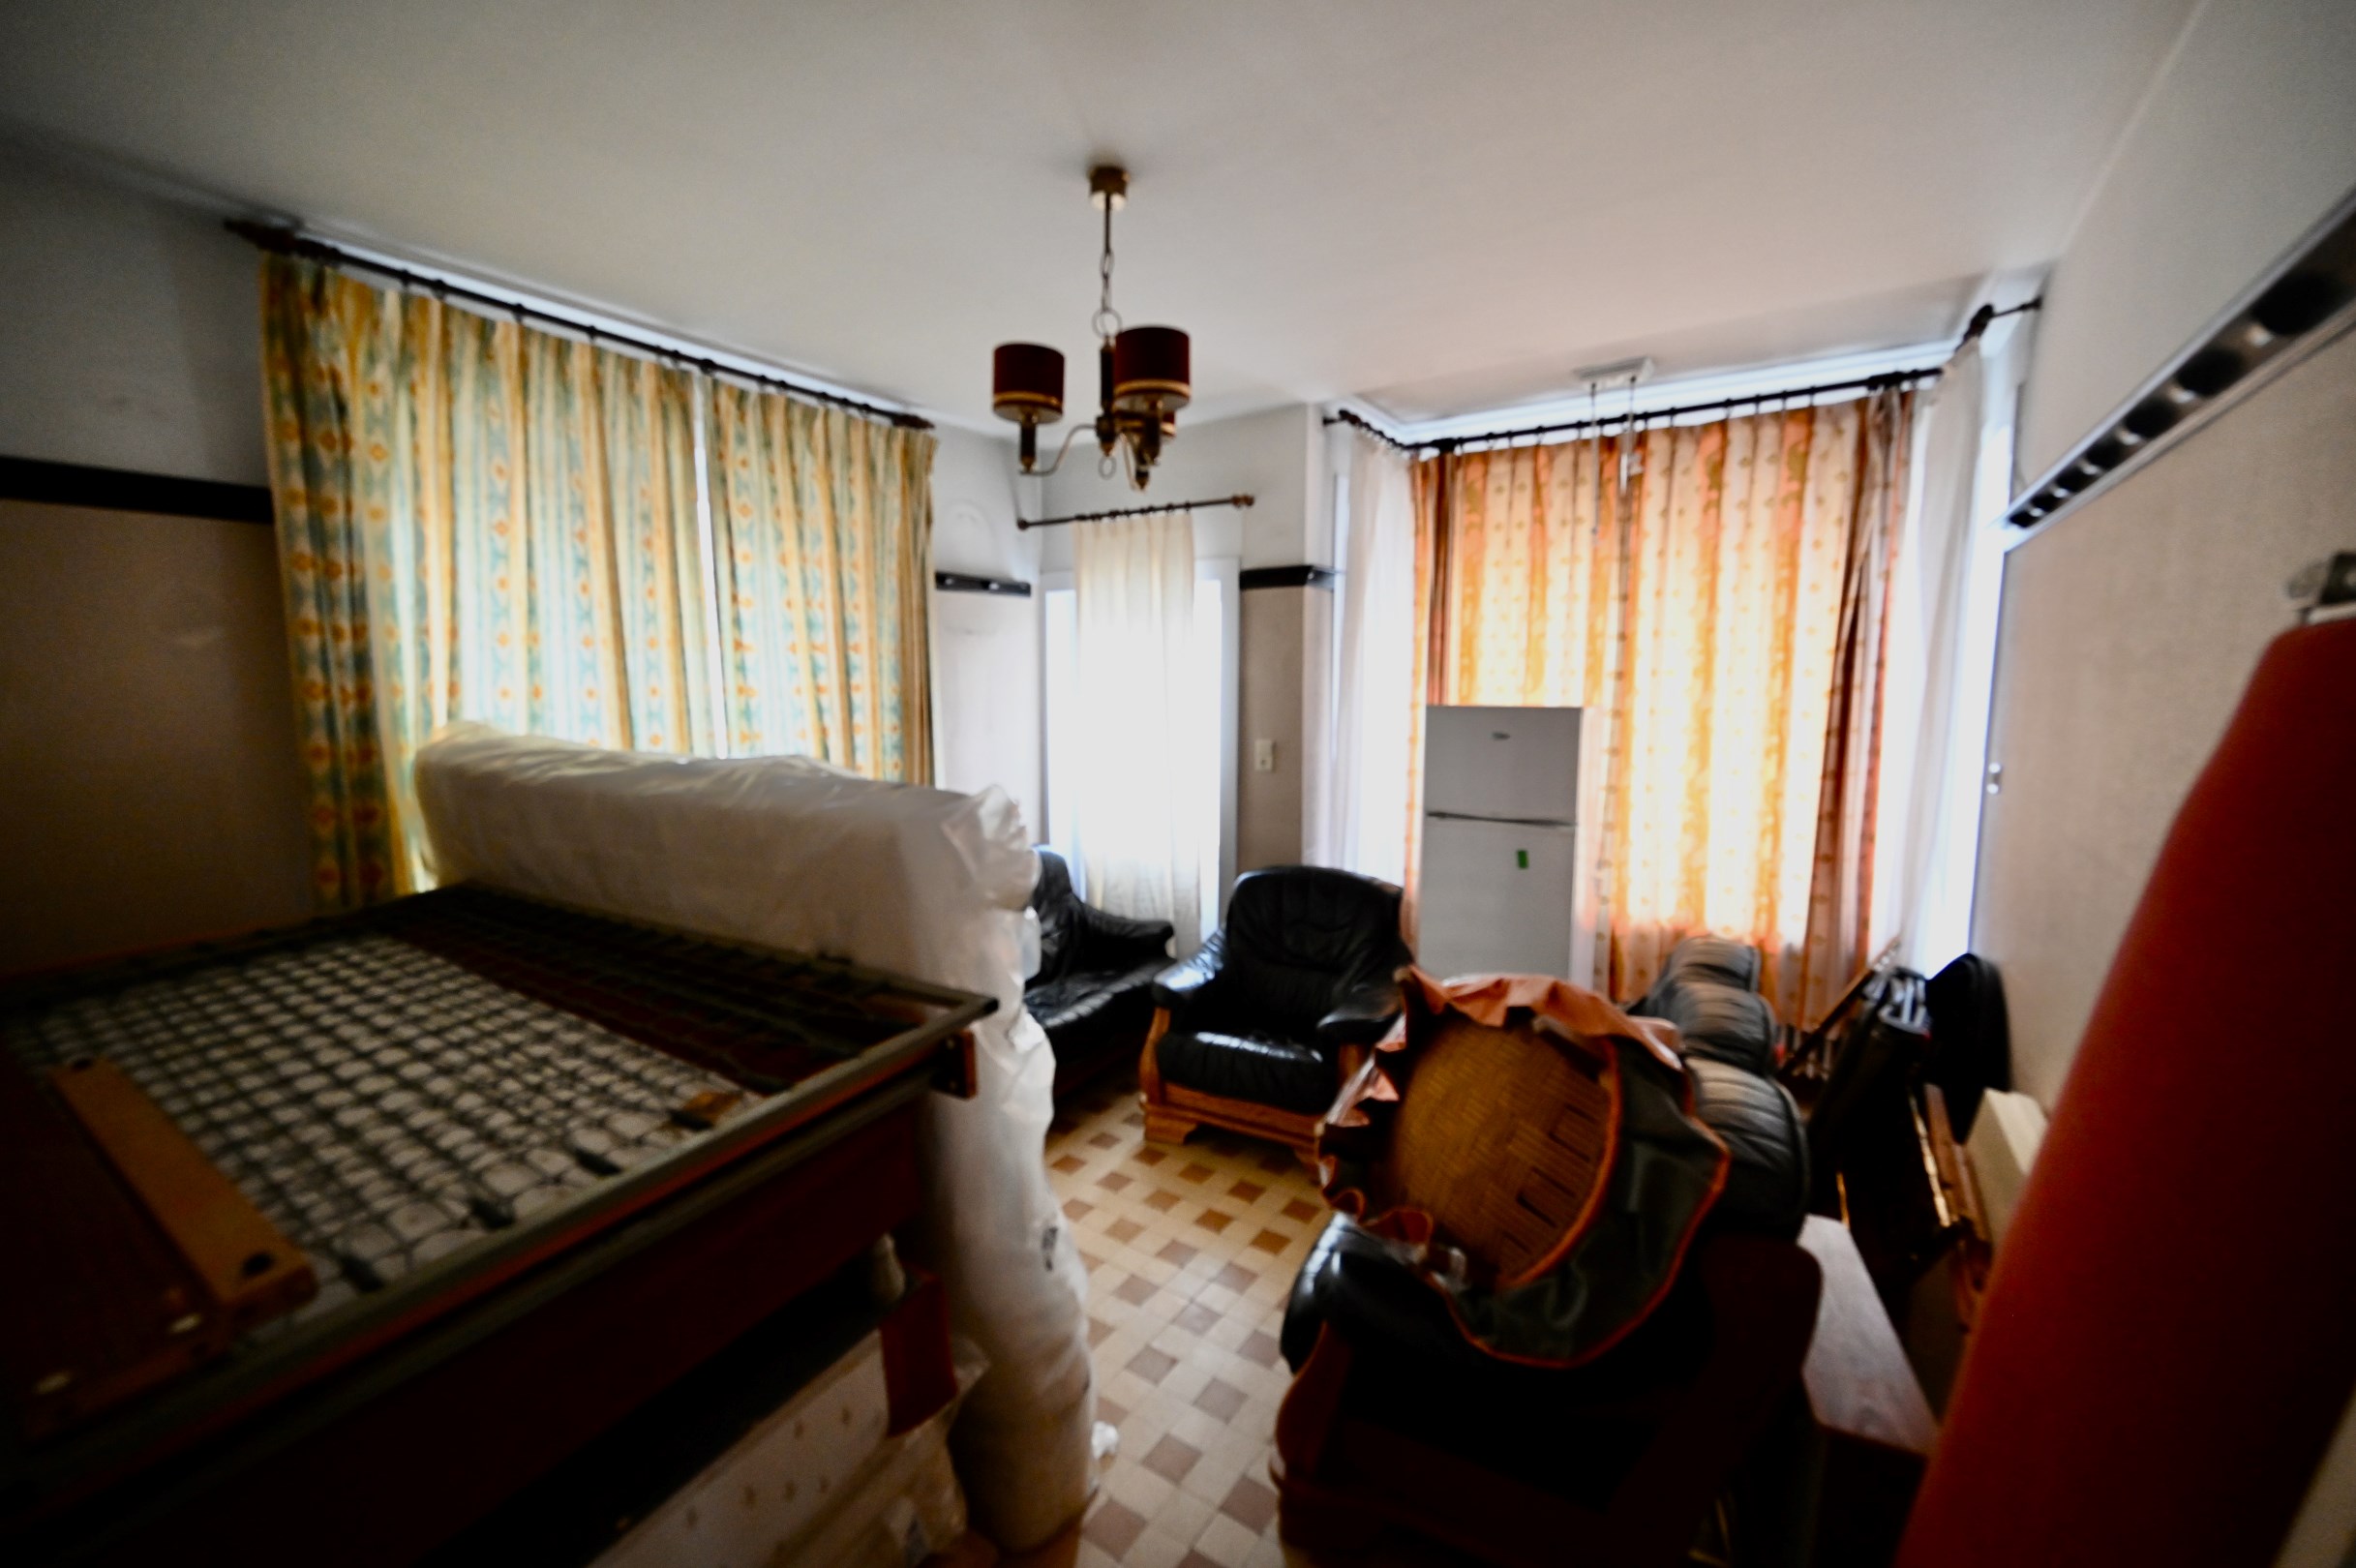 Alleenstaande charmante villa met 6 slaapkamers gelegen midden in het hartje van Duinberge 